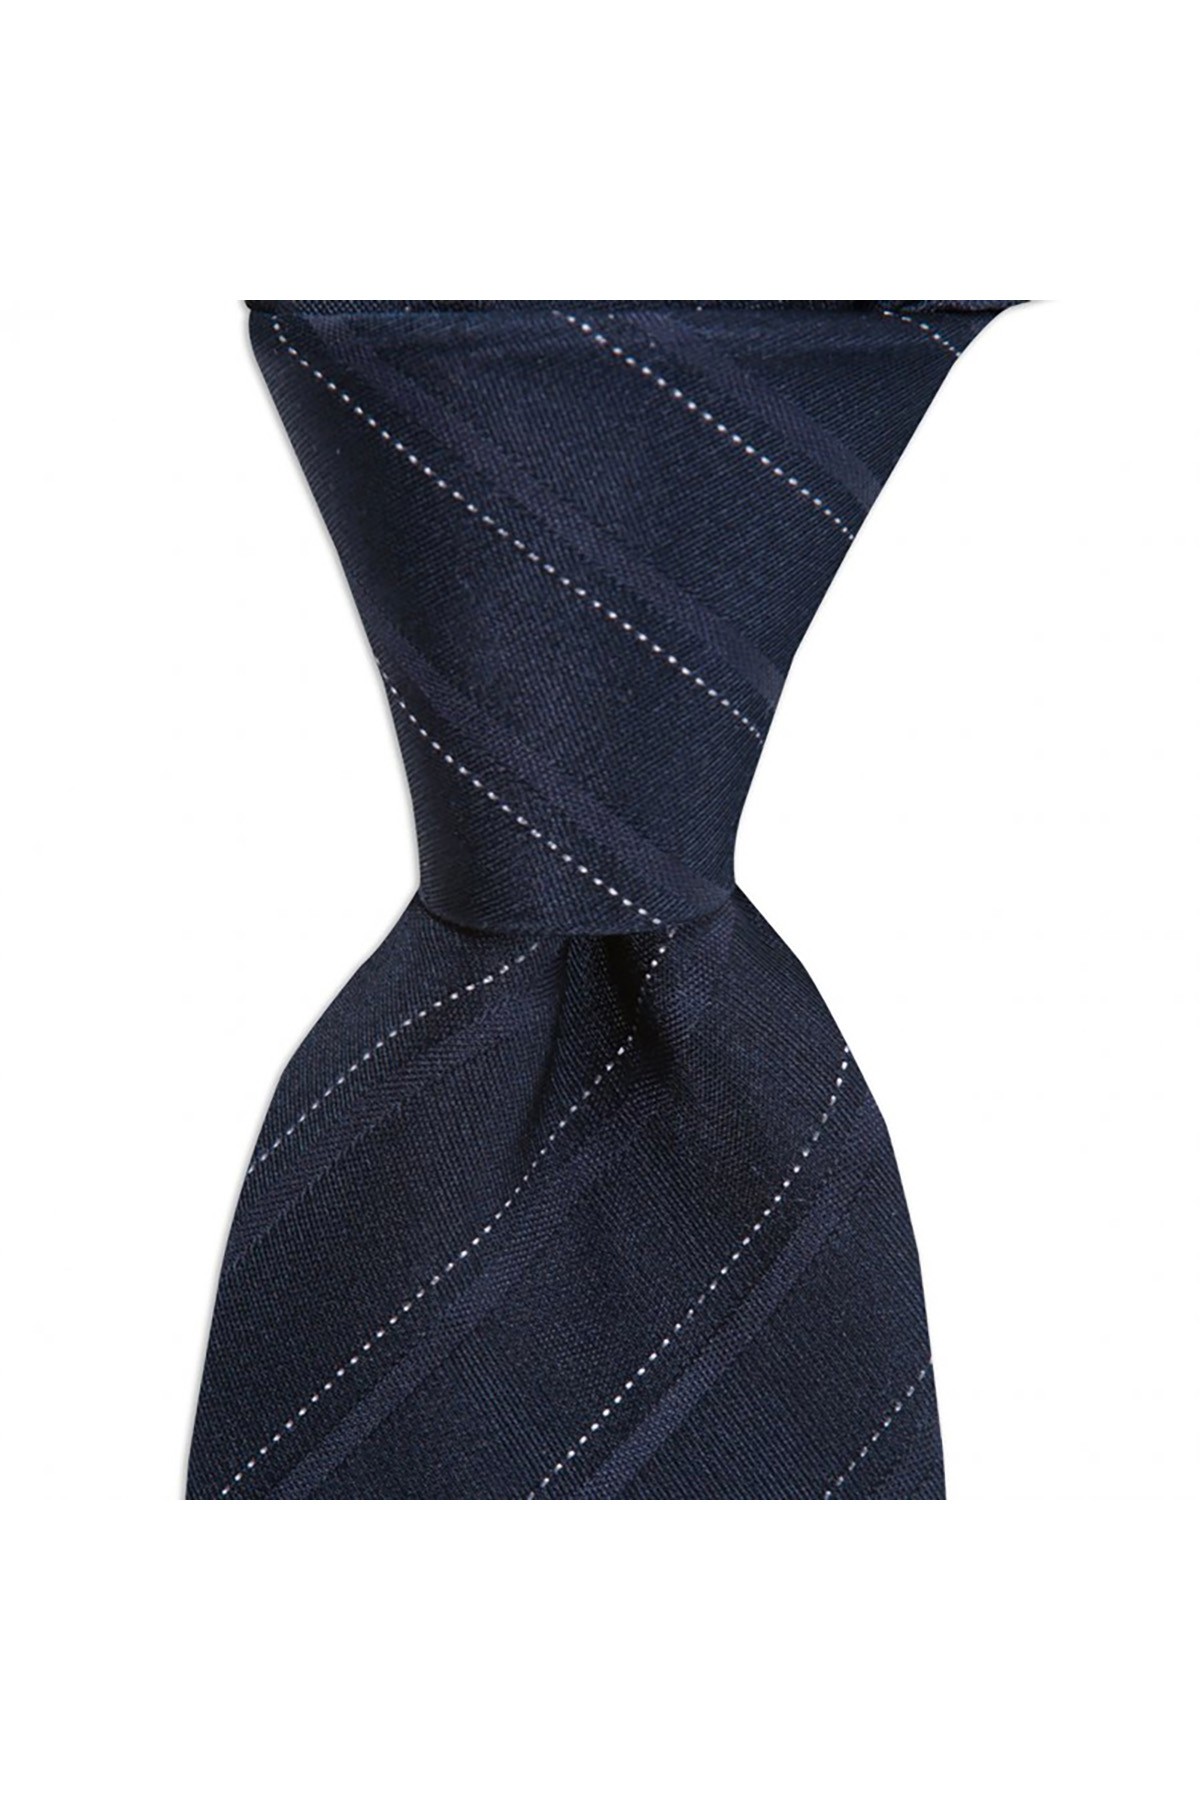 Klasik çizgili 8 cm genişliğinde ipek kravat - Lacivert